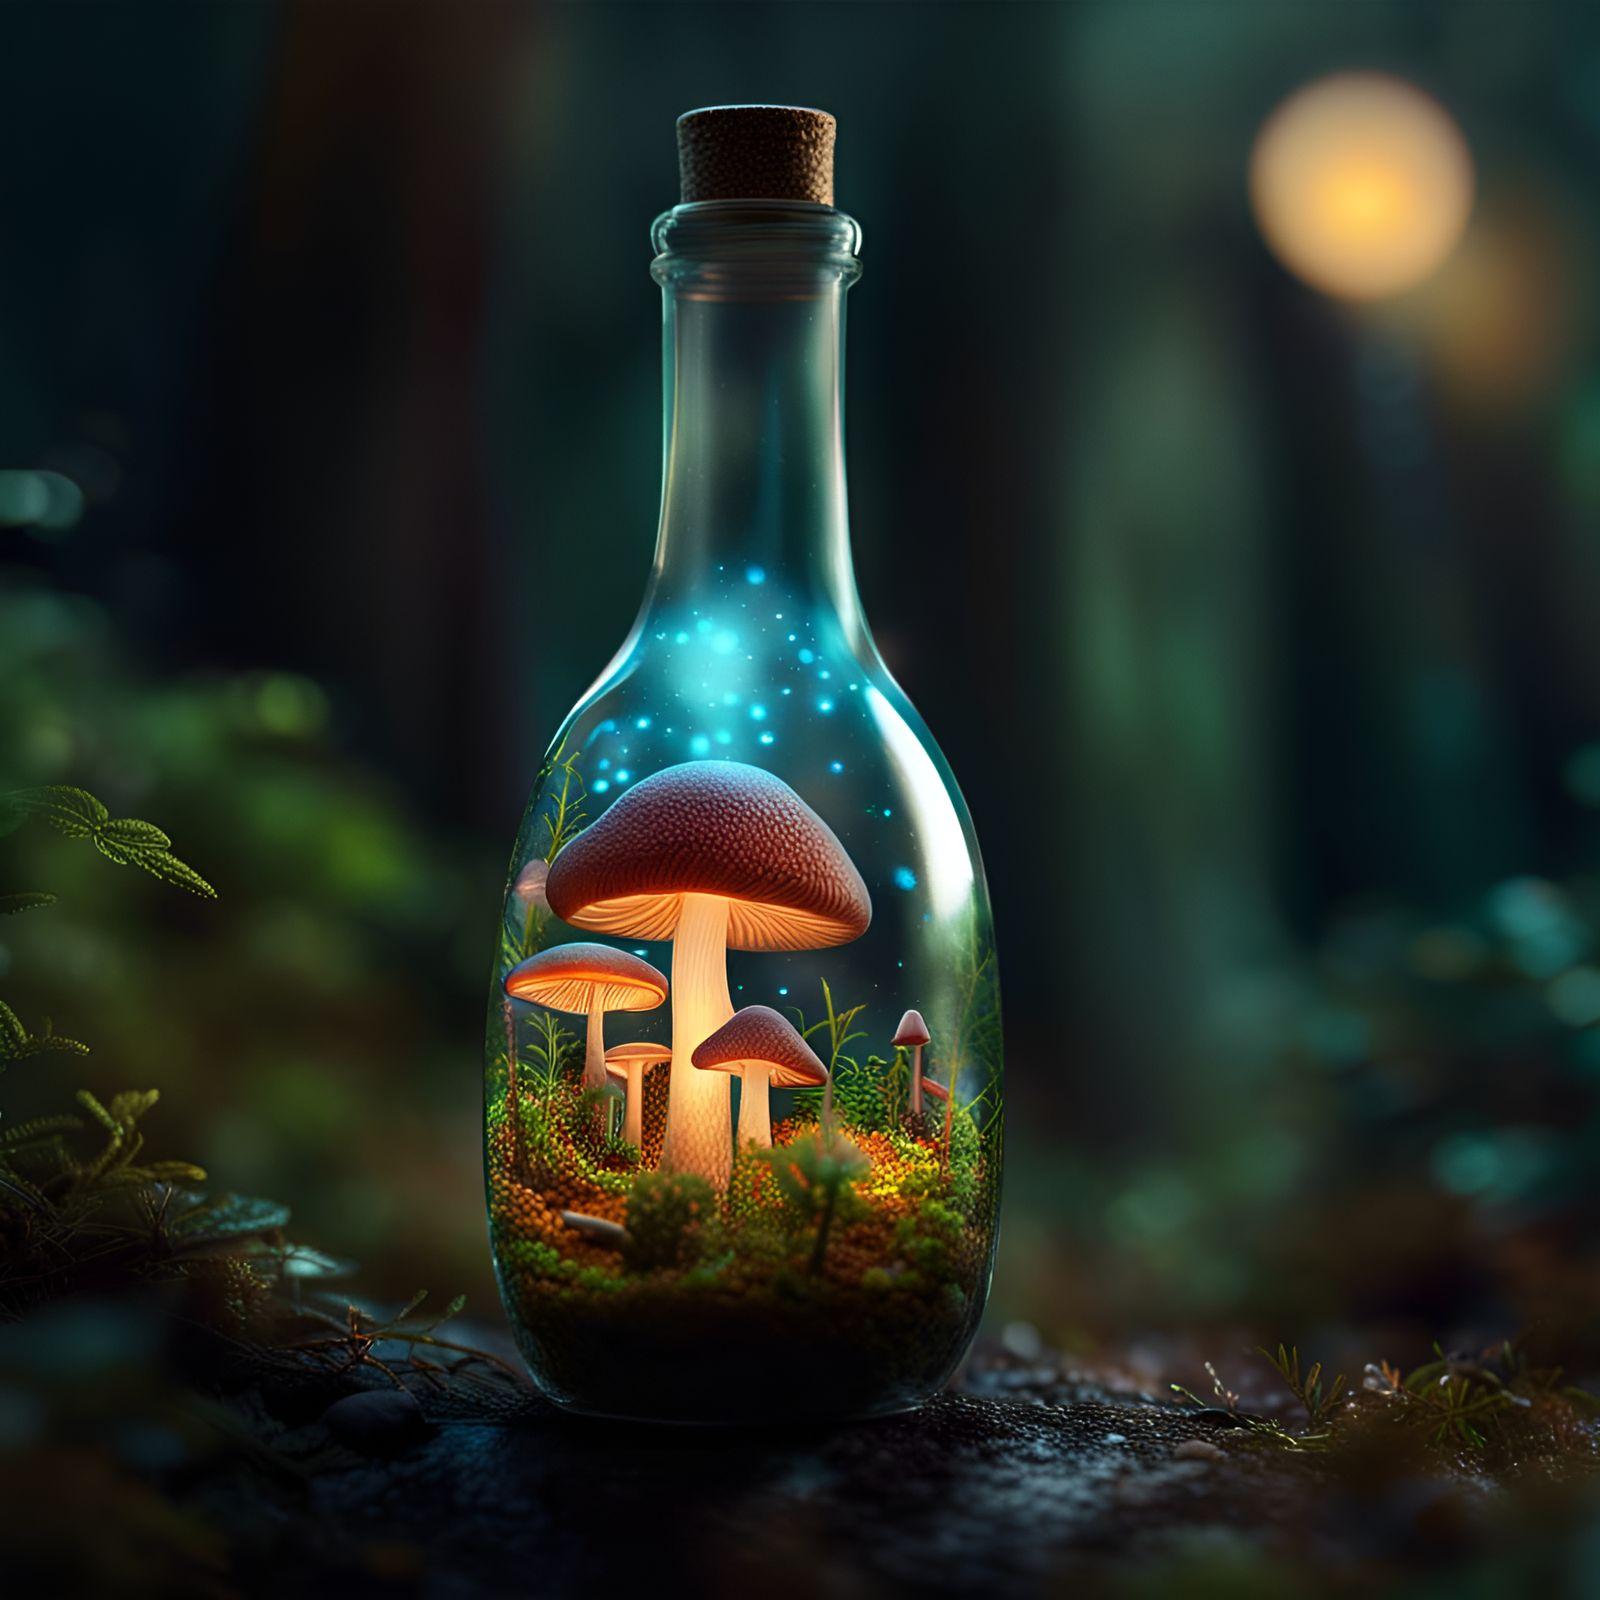 Mushroom forest inside glass bottle